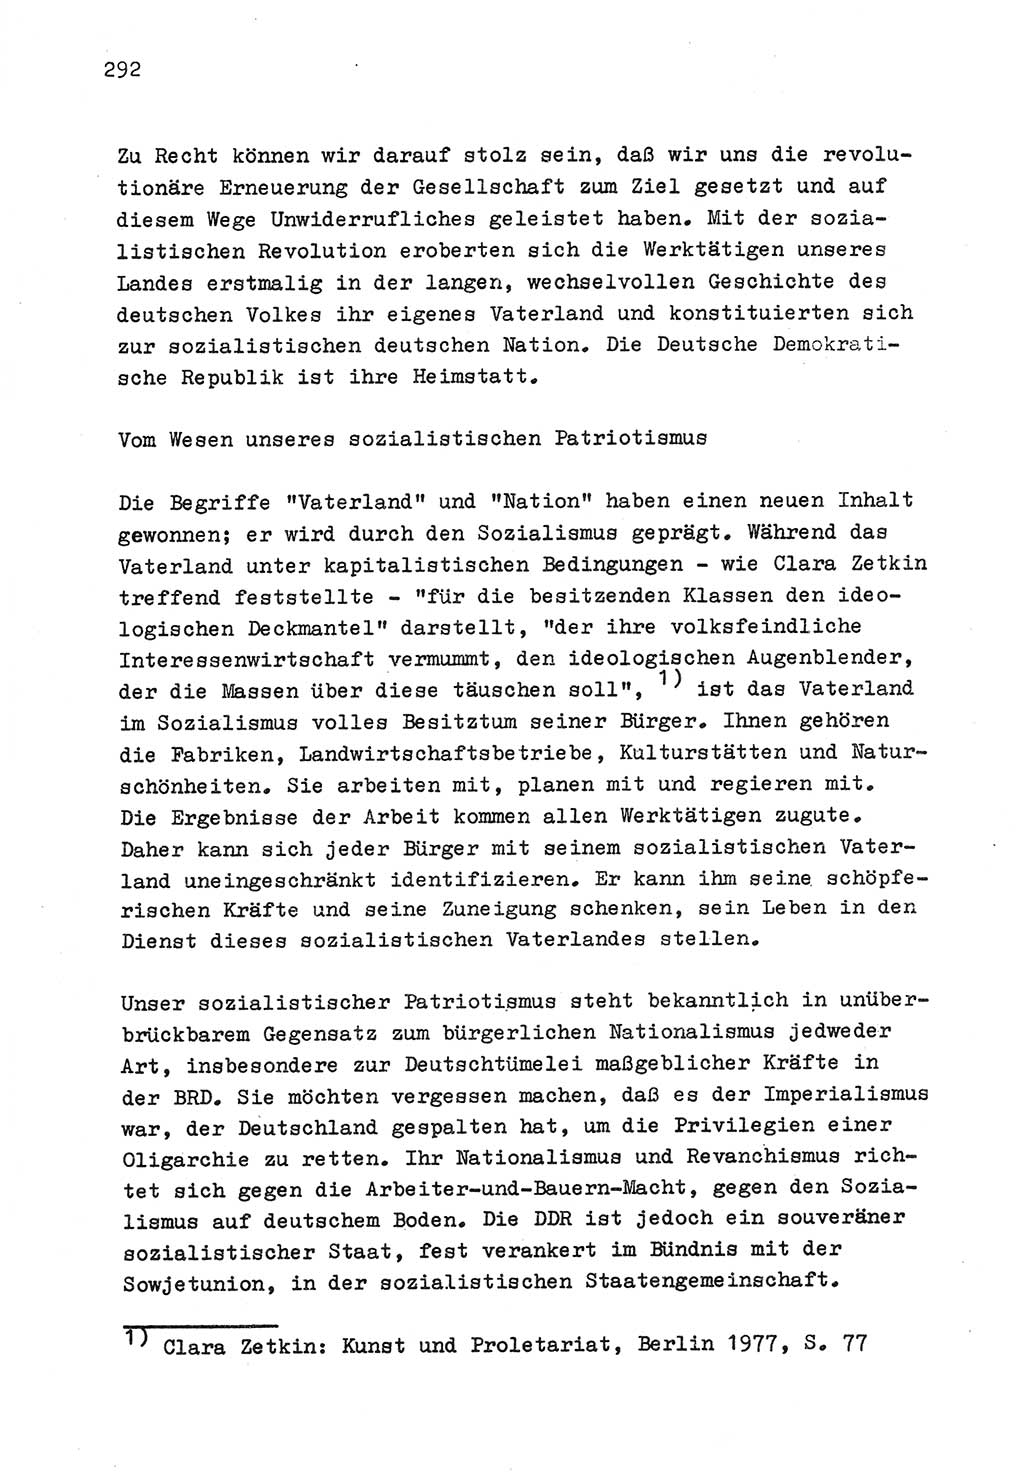 Zu Fragen der Parteiarbeit [Sozialistische Einheitspartei Deutschlands (SED) Deutsche Demokratische Republik (DDR)] 1979, Seite 292 (Fr. PA SED DDR 1979, S. 292)